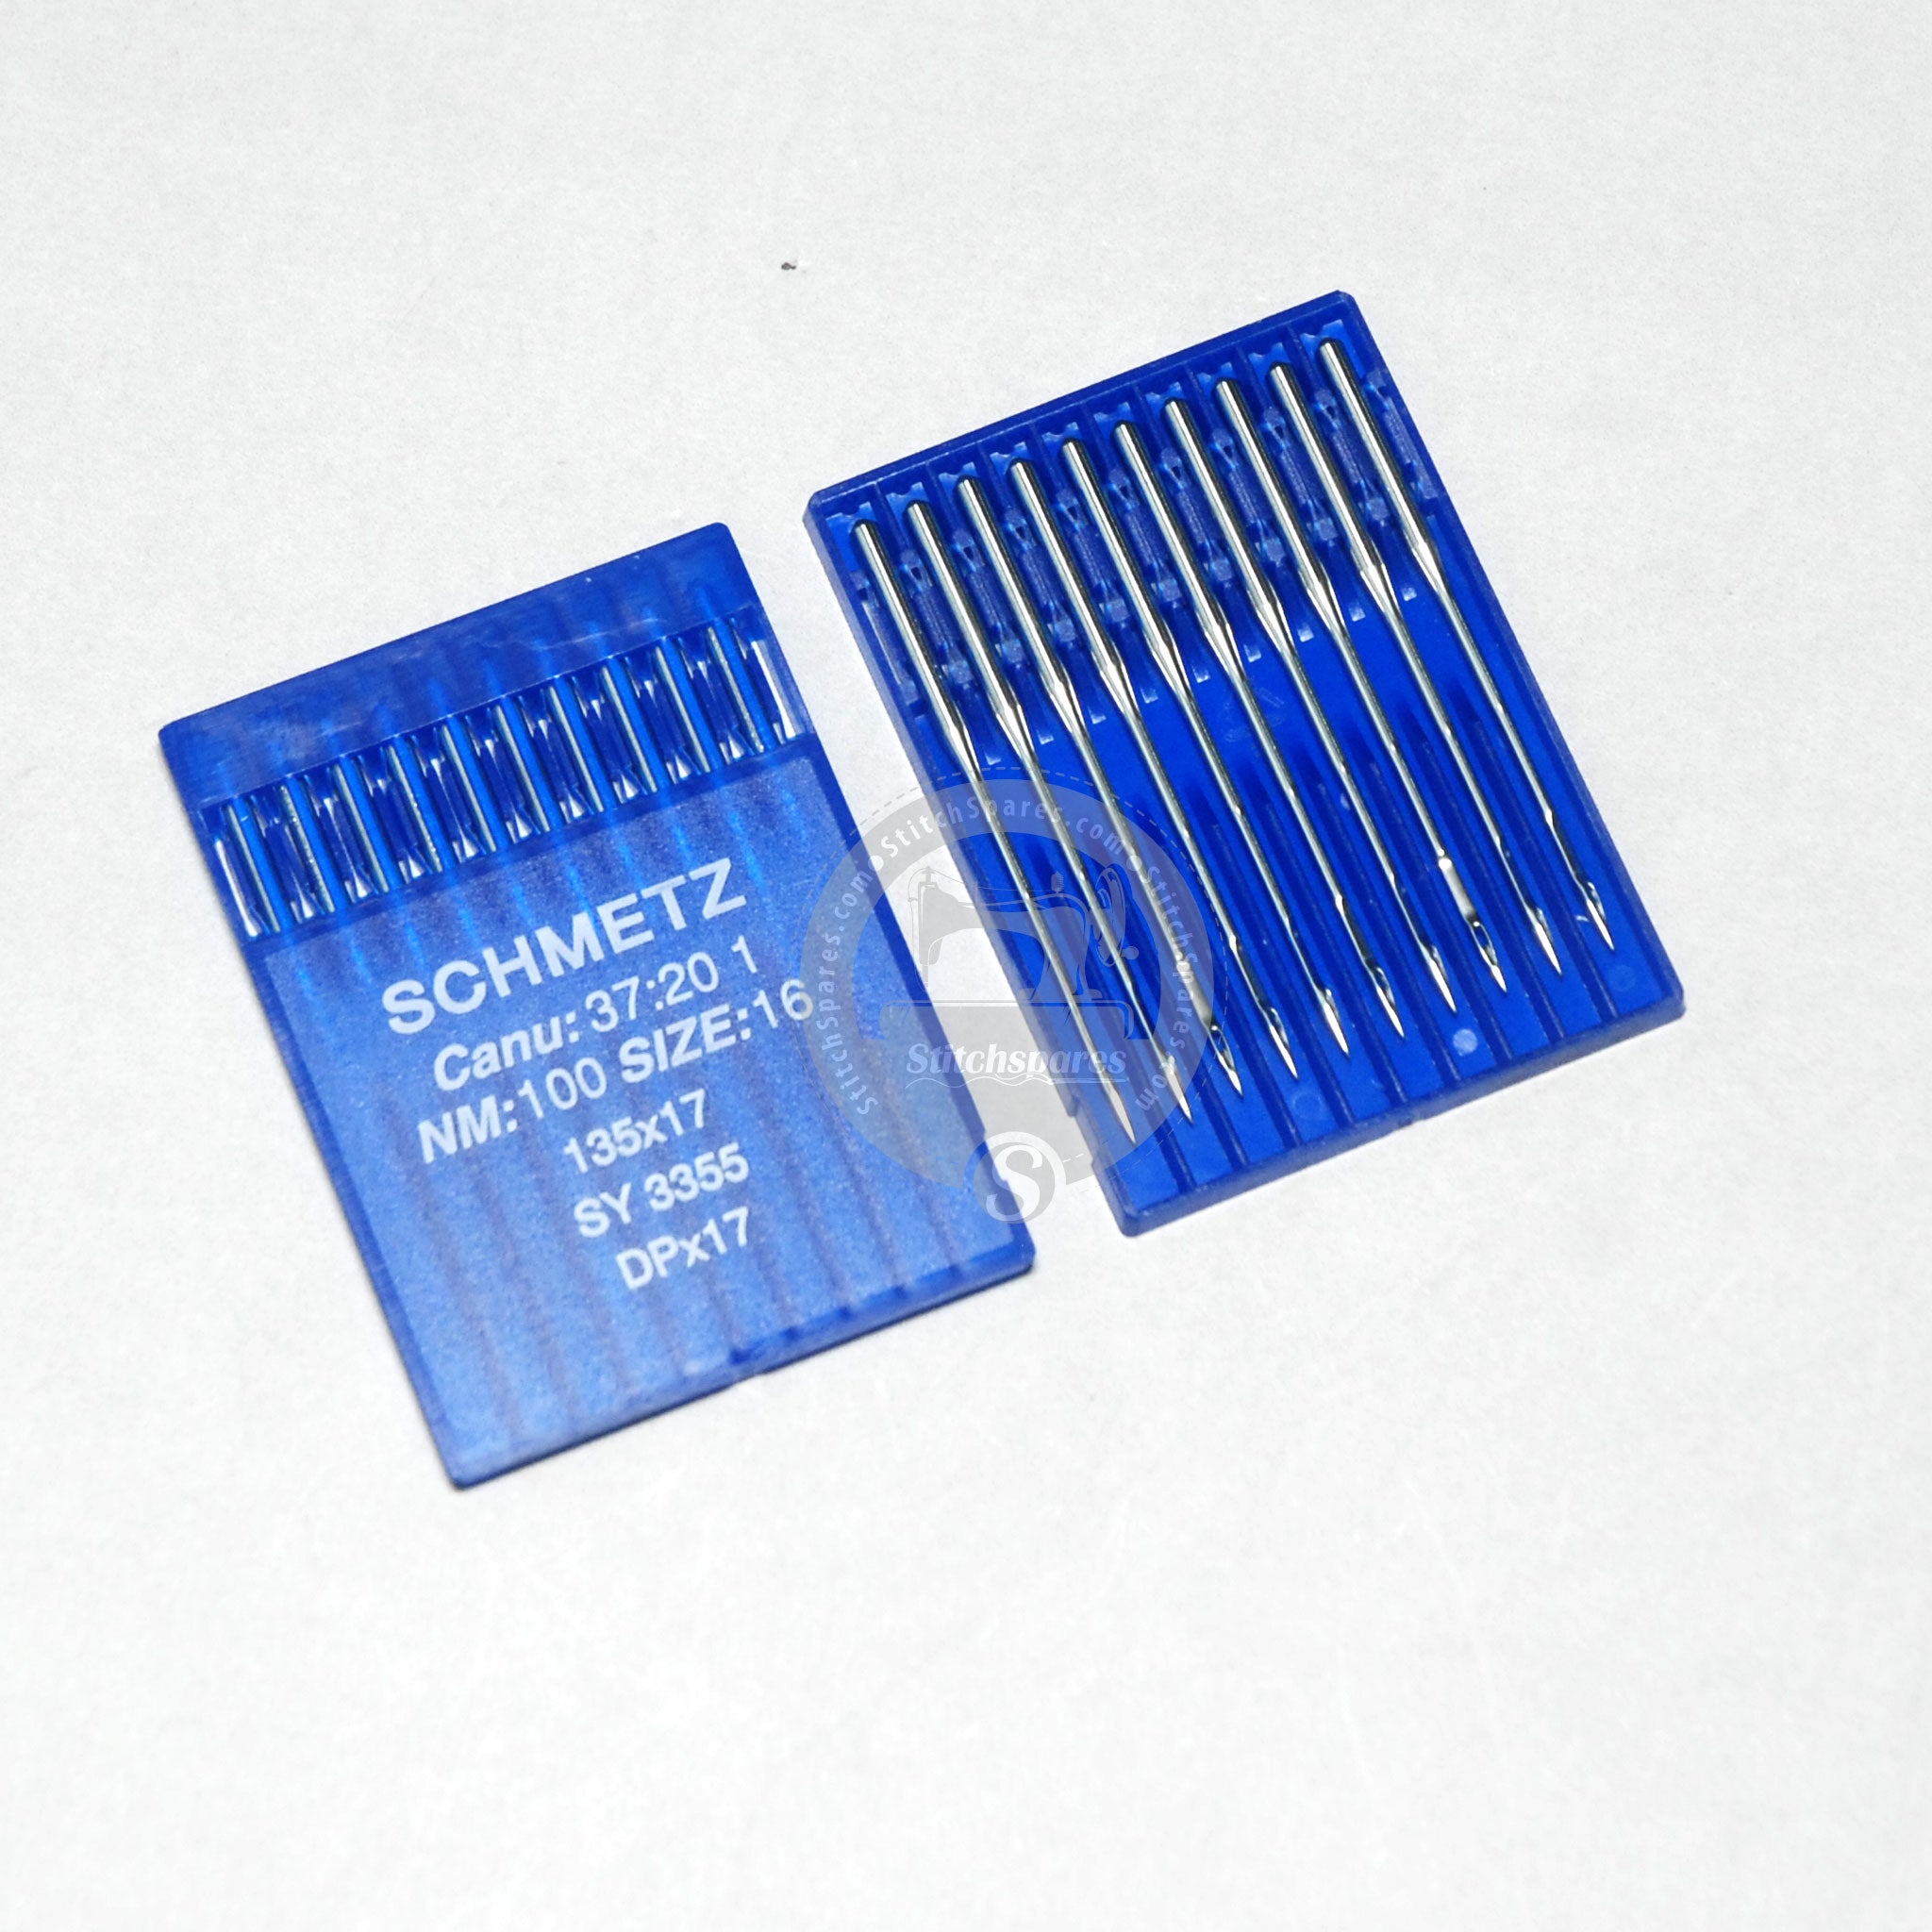 DPX17 10016 SY3355 Schmetz-Nadel für Industrienähmaschine